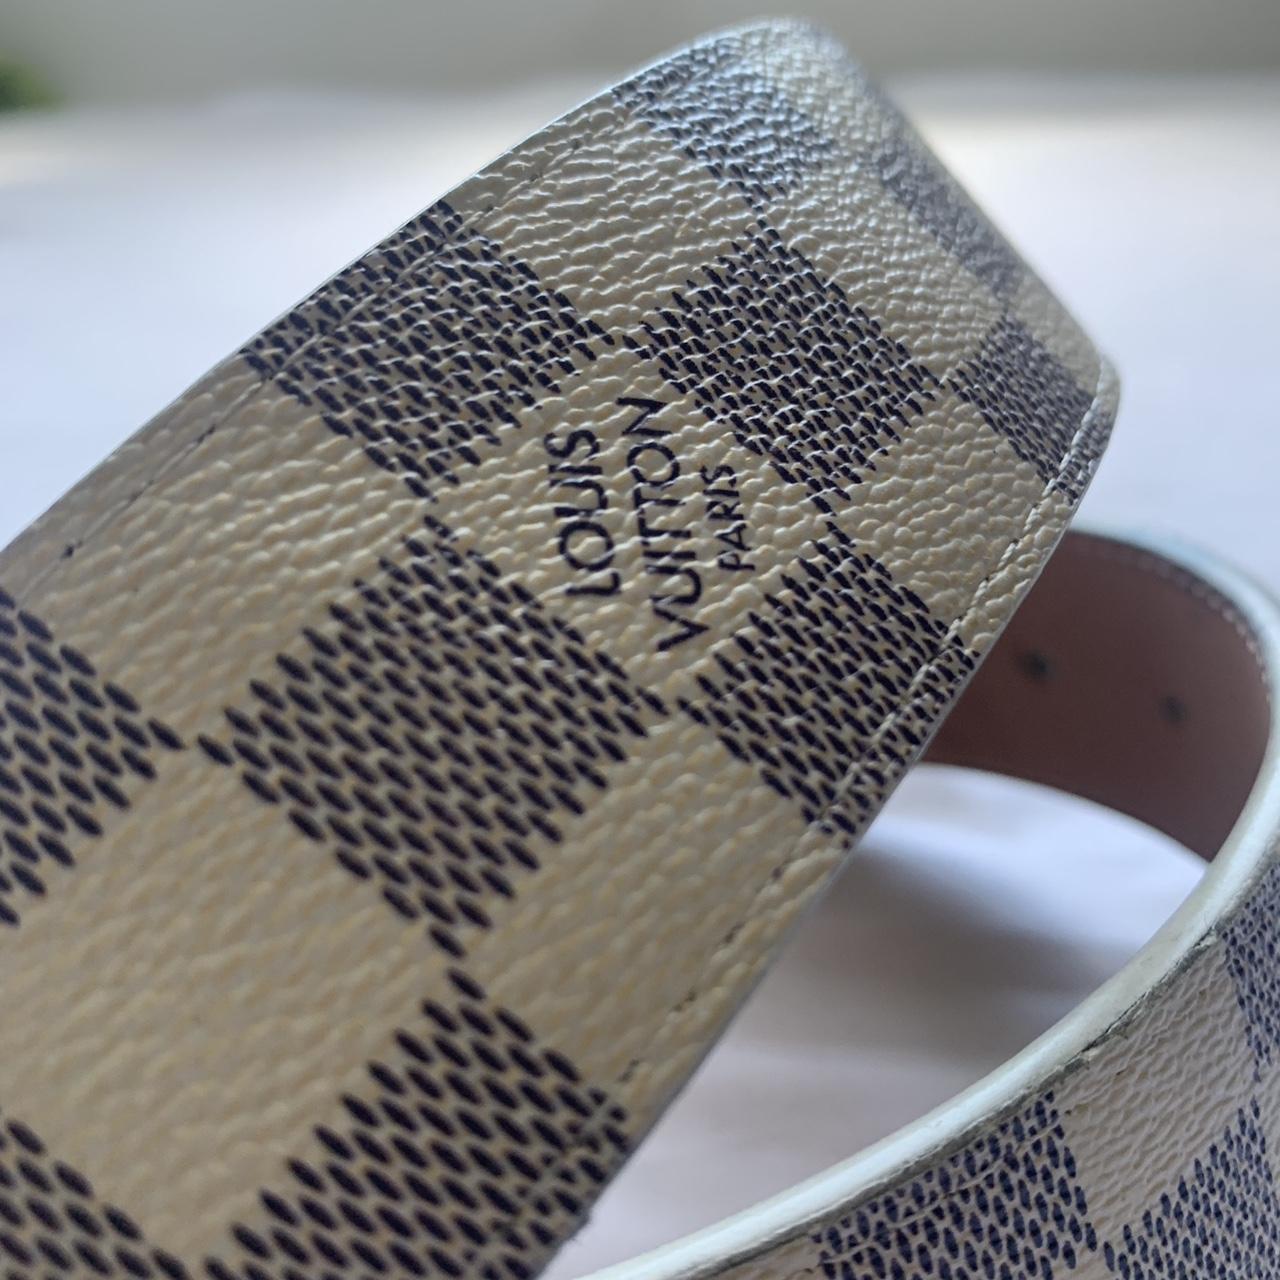 Louis Vuitton Belt LV Initiales Reversible Damier Azur 30mm Pink